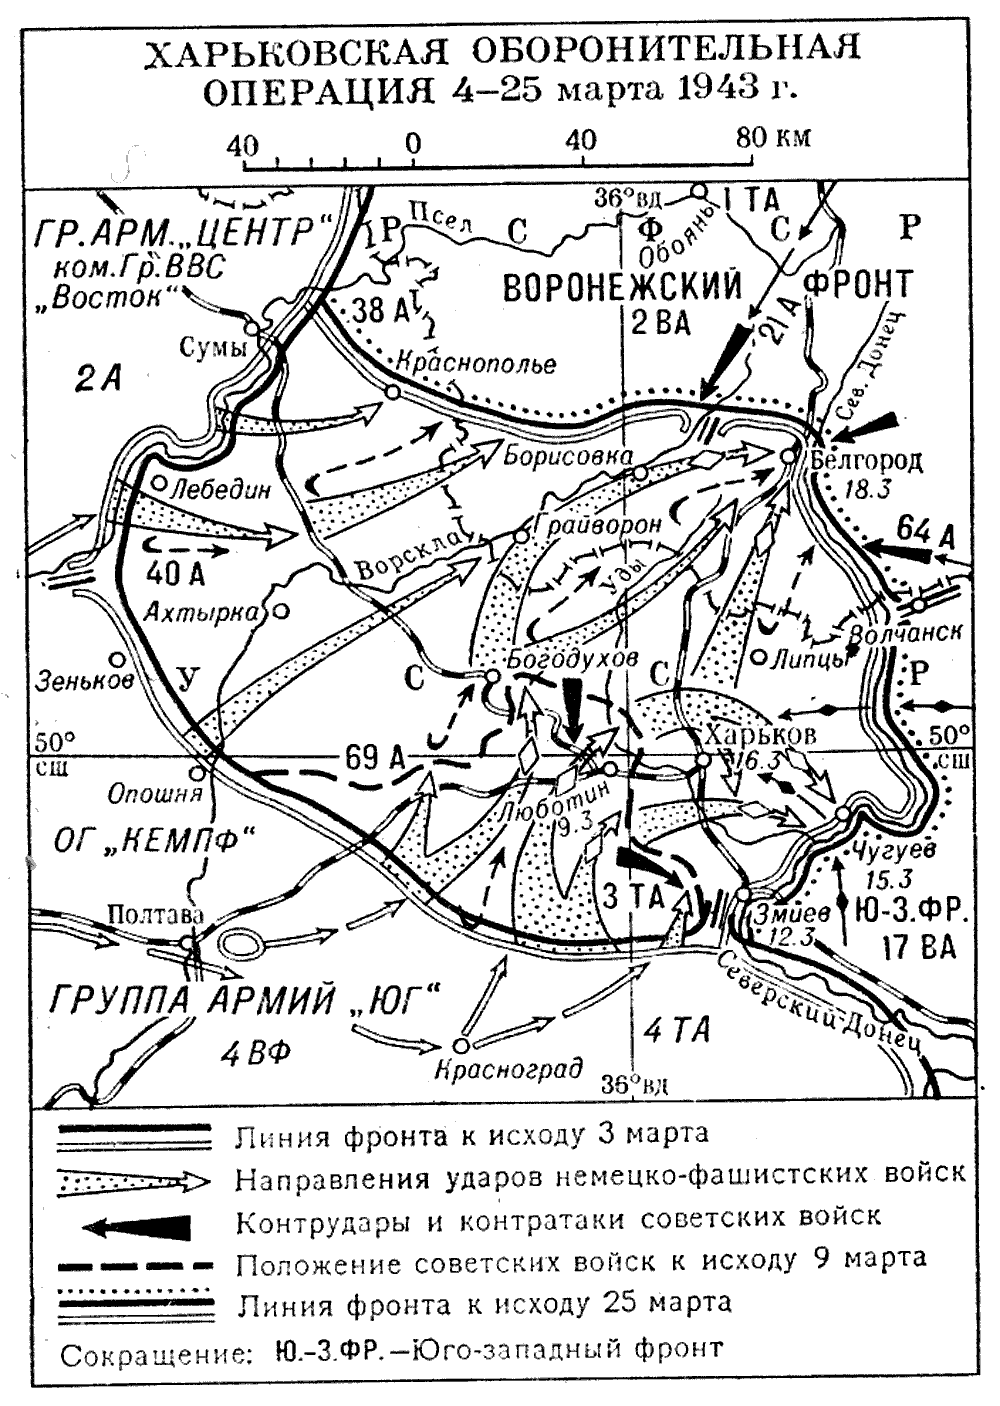 Операции красной армии в 1943. Харьковская наступательная операция 1943 года.